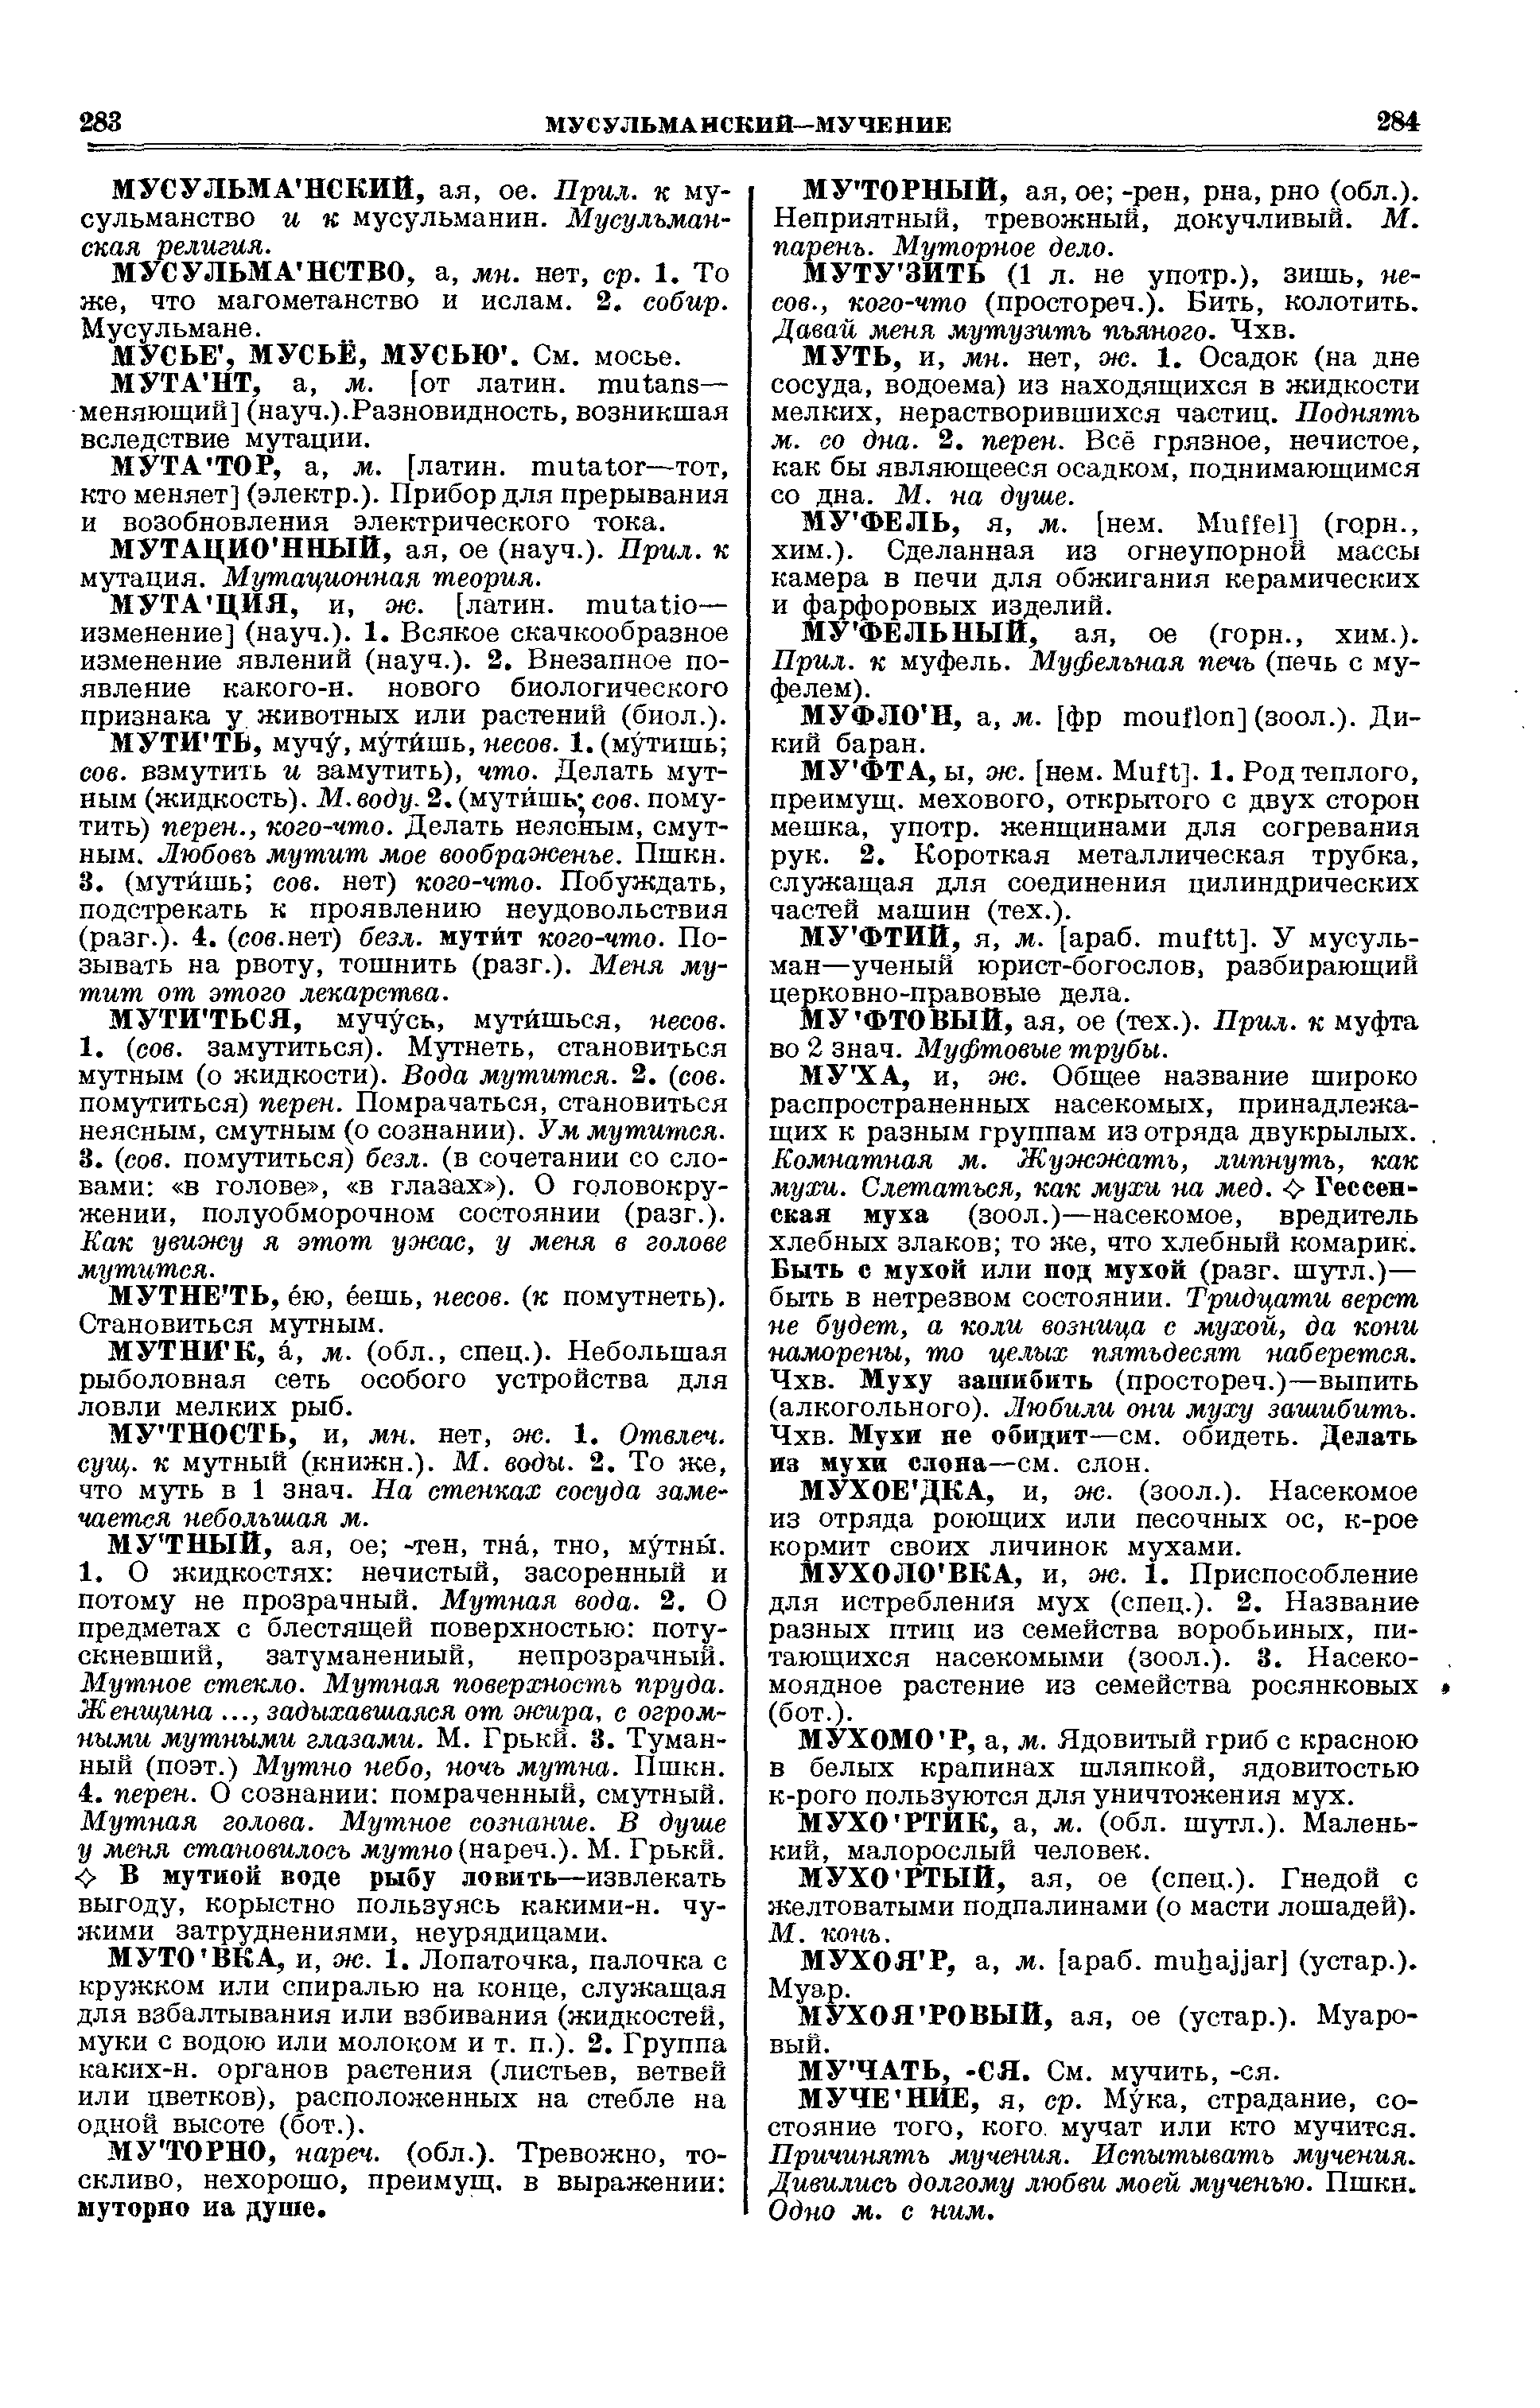 Фотокопия pdf / скан страницы 142 толкового словаря Ушакова (том 2)